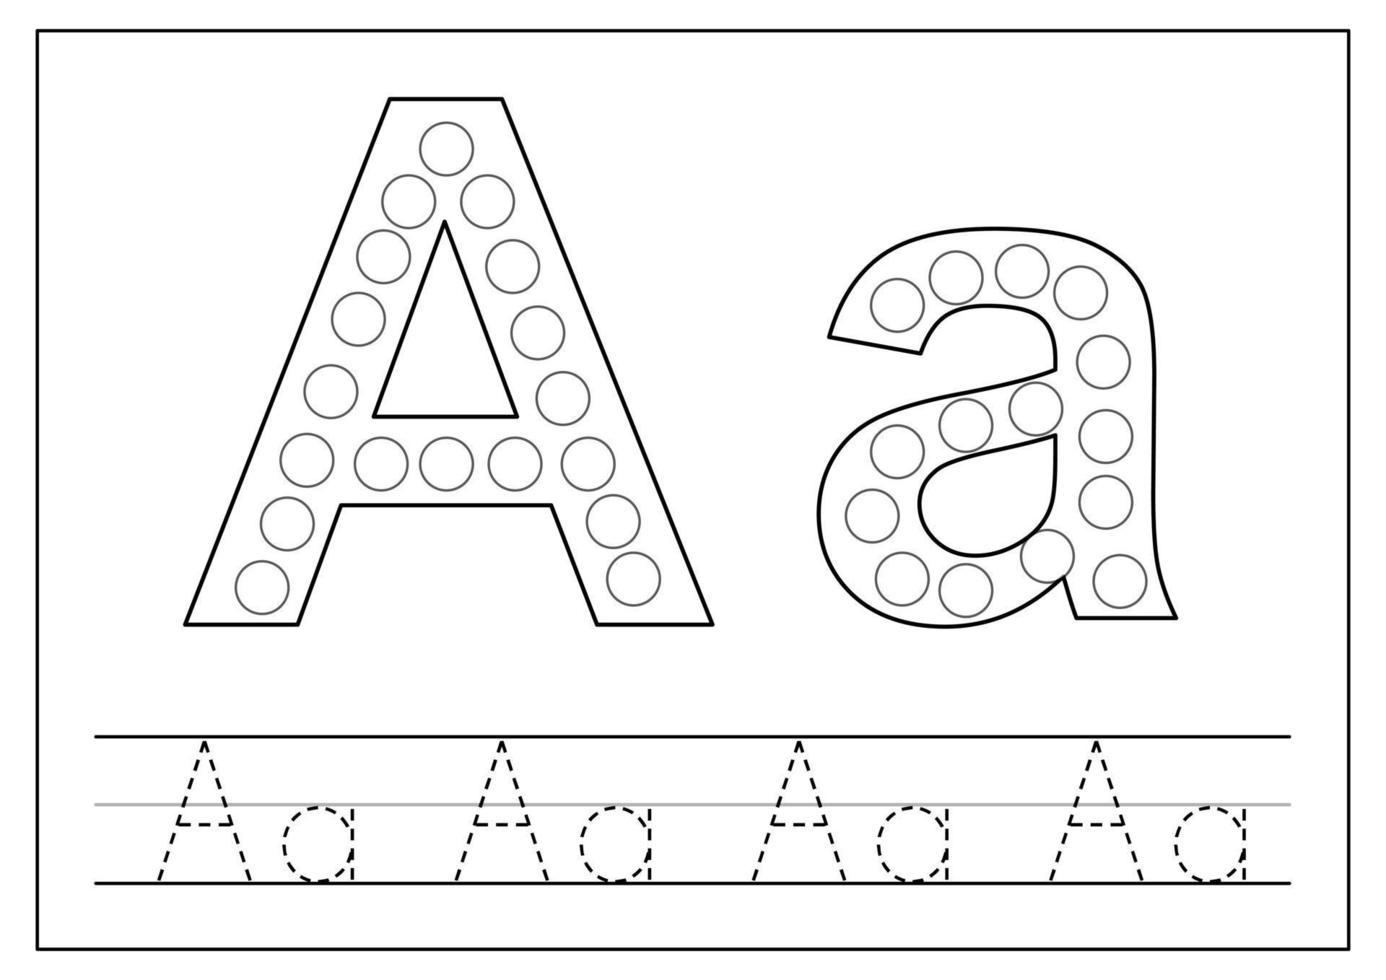 Engels alfabet leren voor kinderen. letter A. letters traceren. vector